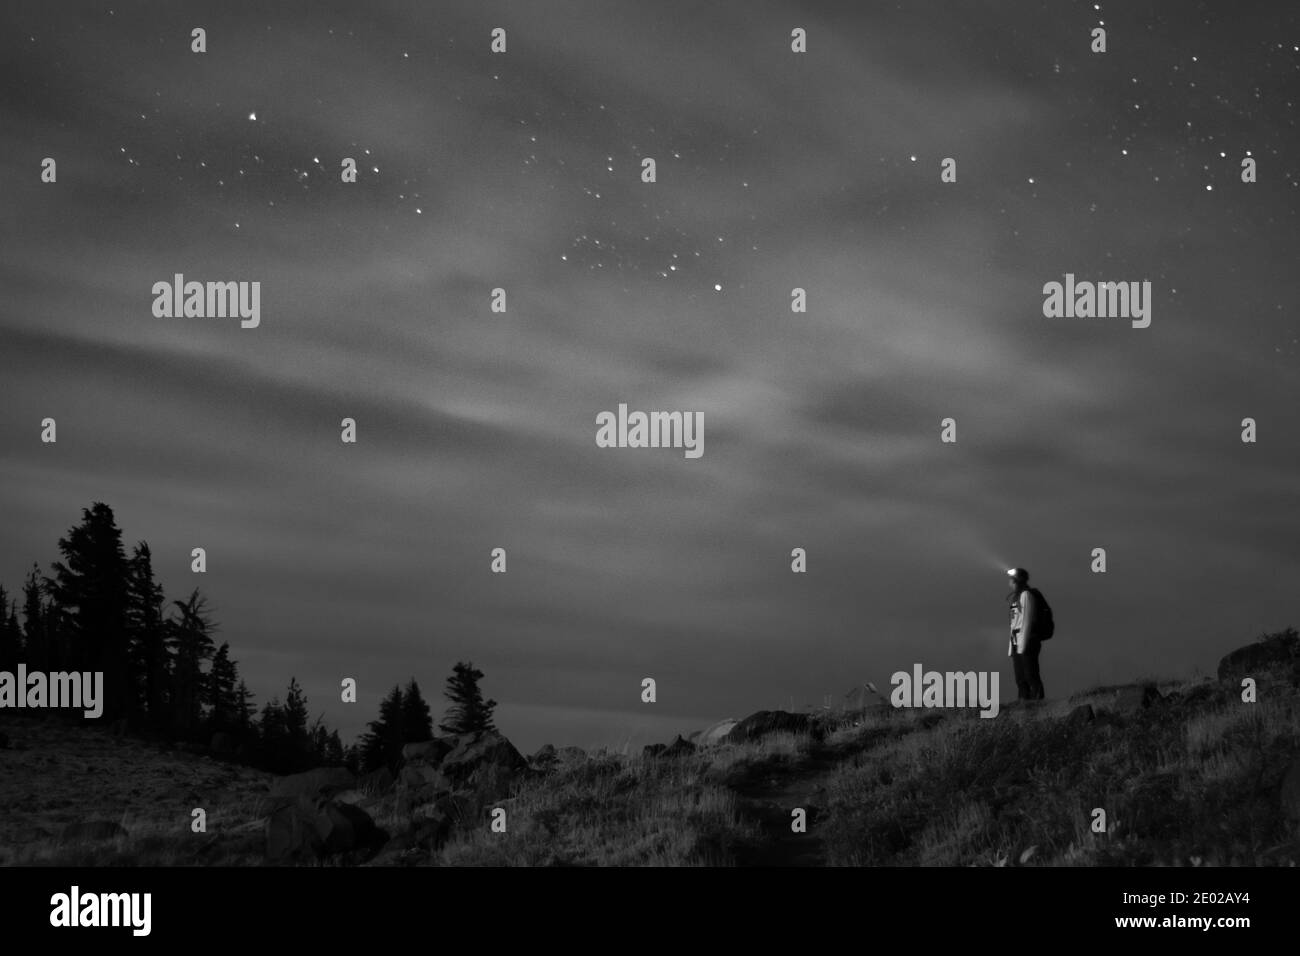 Megan Lee mira hacia las estrellas, ligeramente oscurecida por la noche turbia Foto de stock